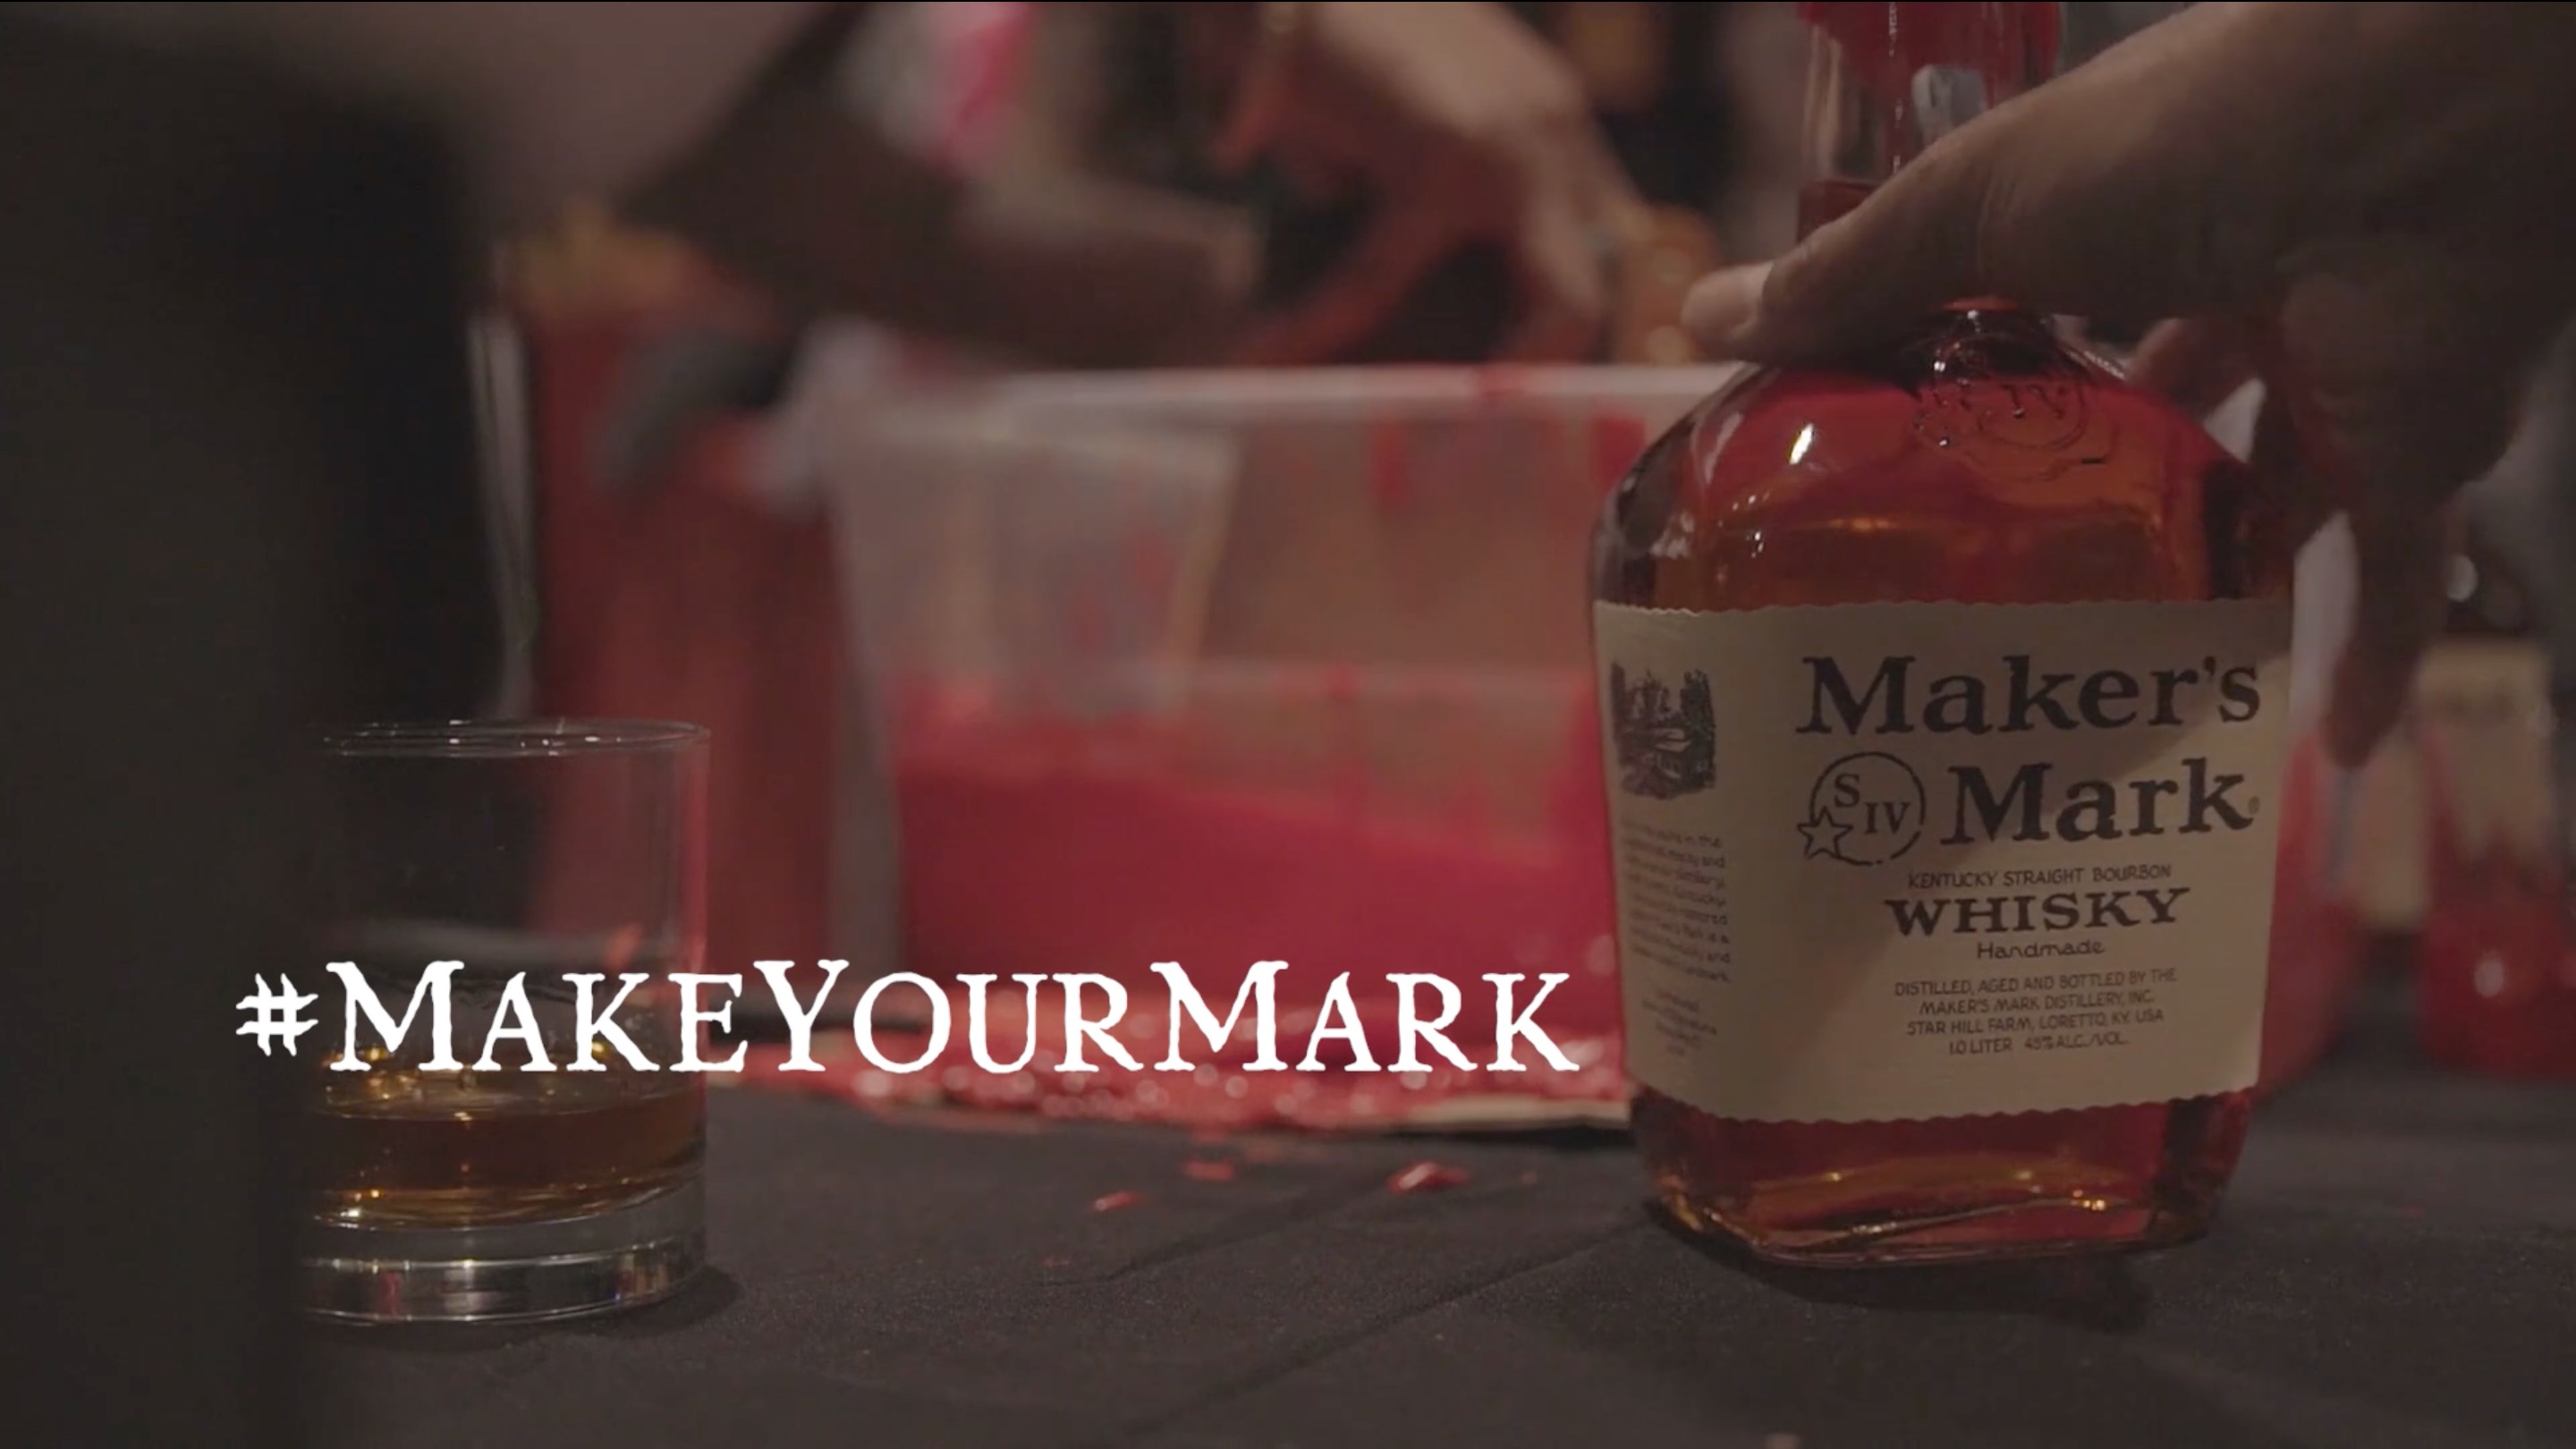 Maker's Mark alongside their "Make Your Mark" hashtag